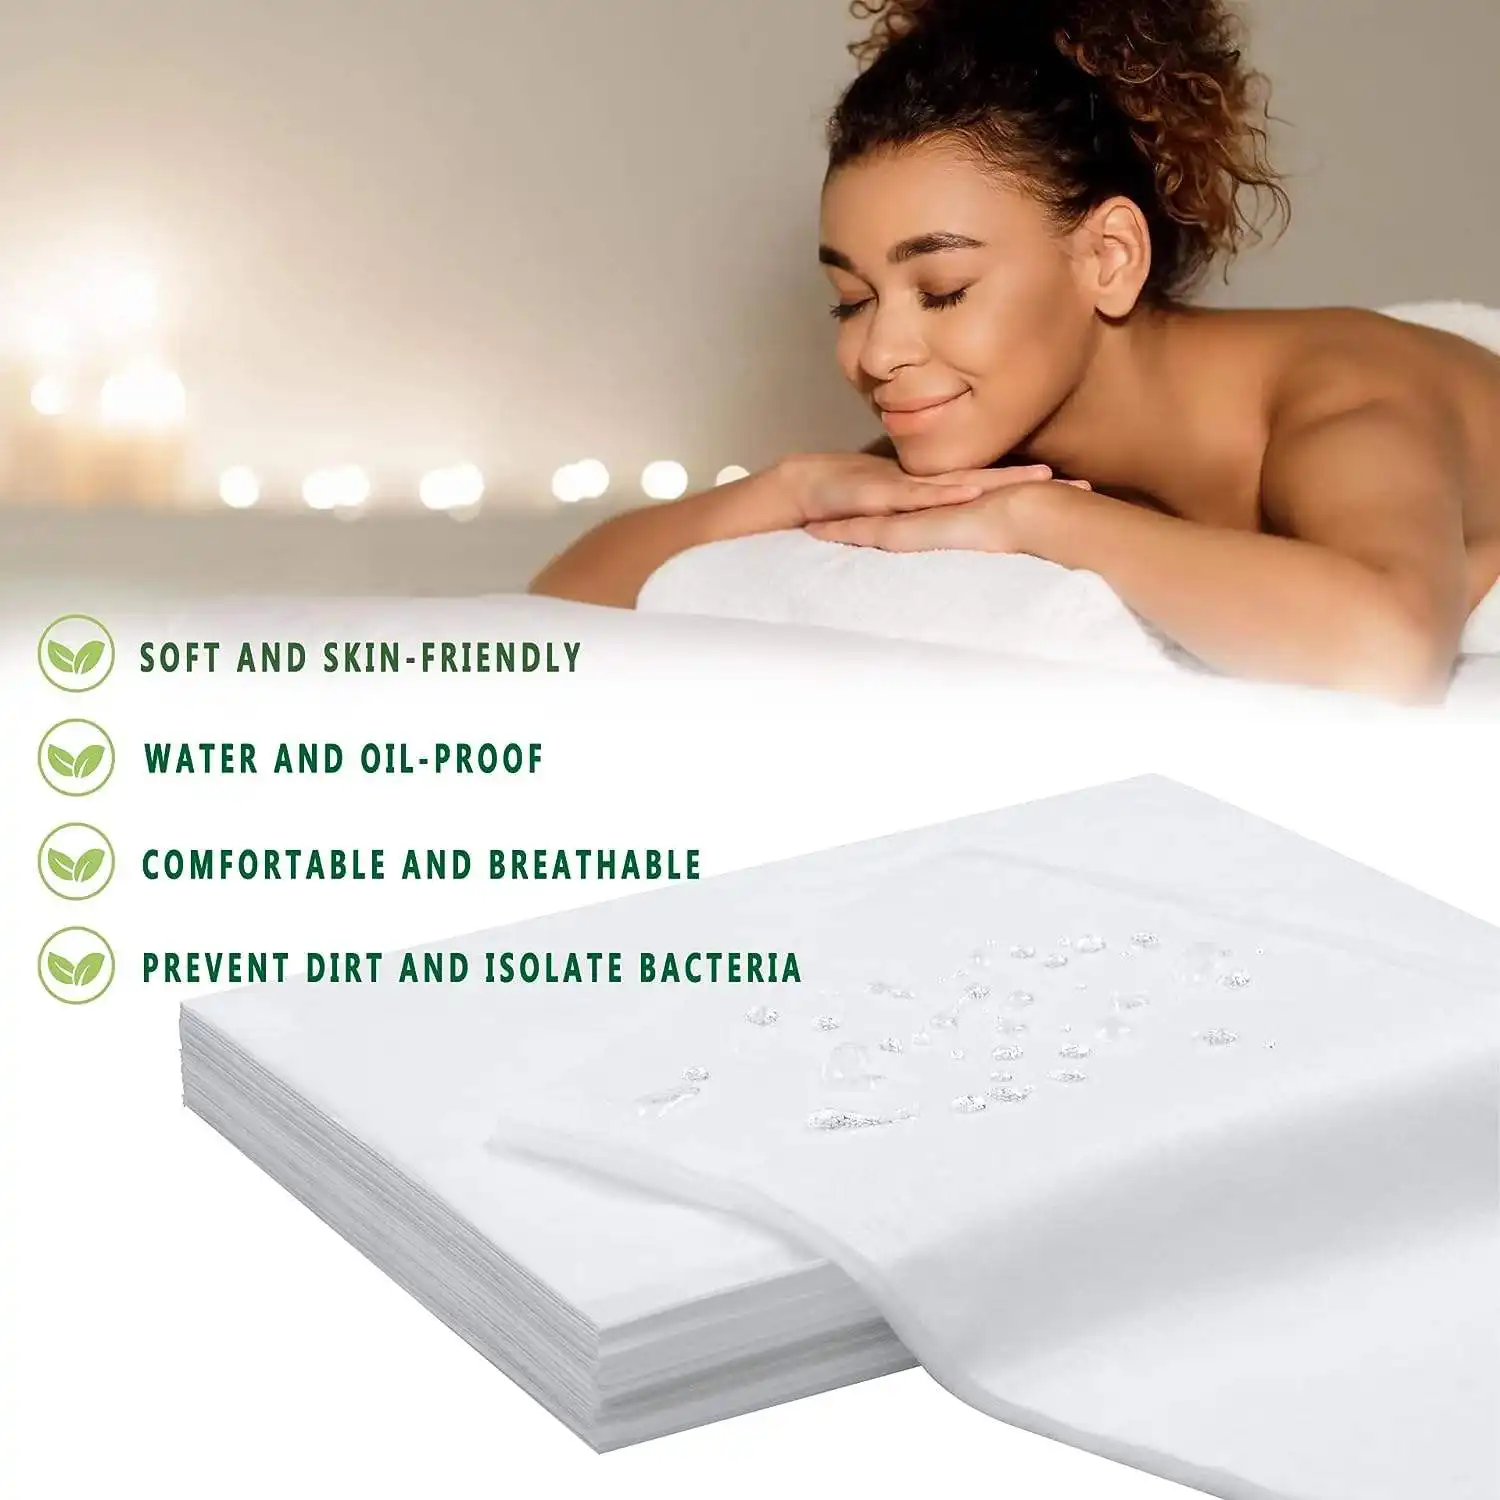 ملاءات السرير المقاومة للماء تُستخدم لمرة واحدة غطاء سرير لطاولة التدليك ملاءات سرير غير منسوجة للمنتجعات الصحية وصالون التجميل